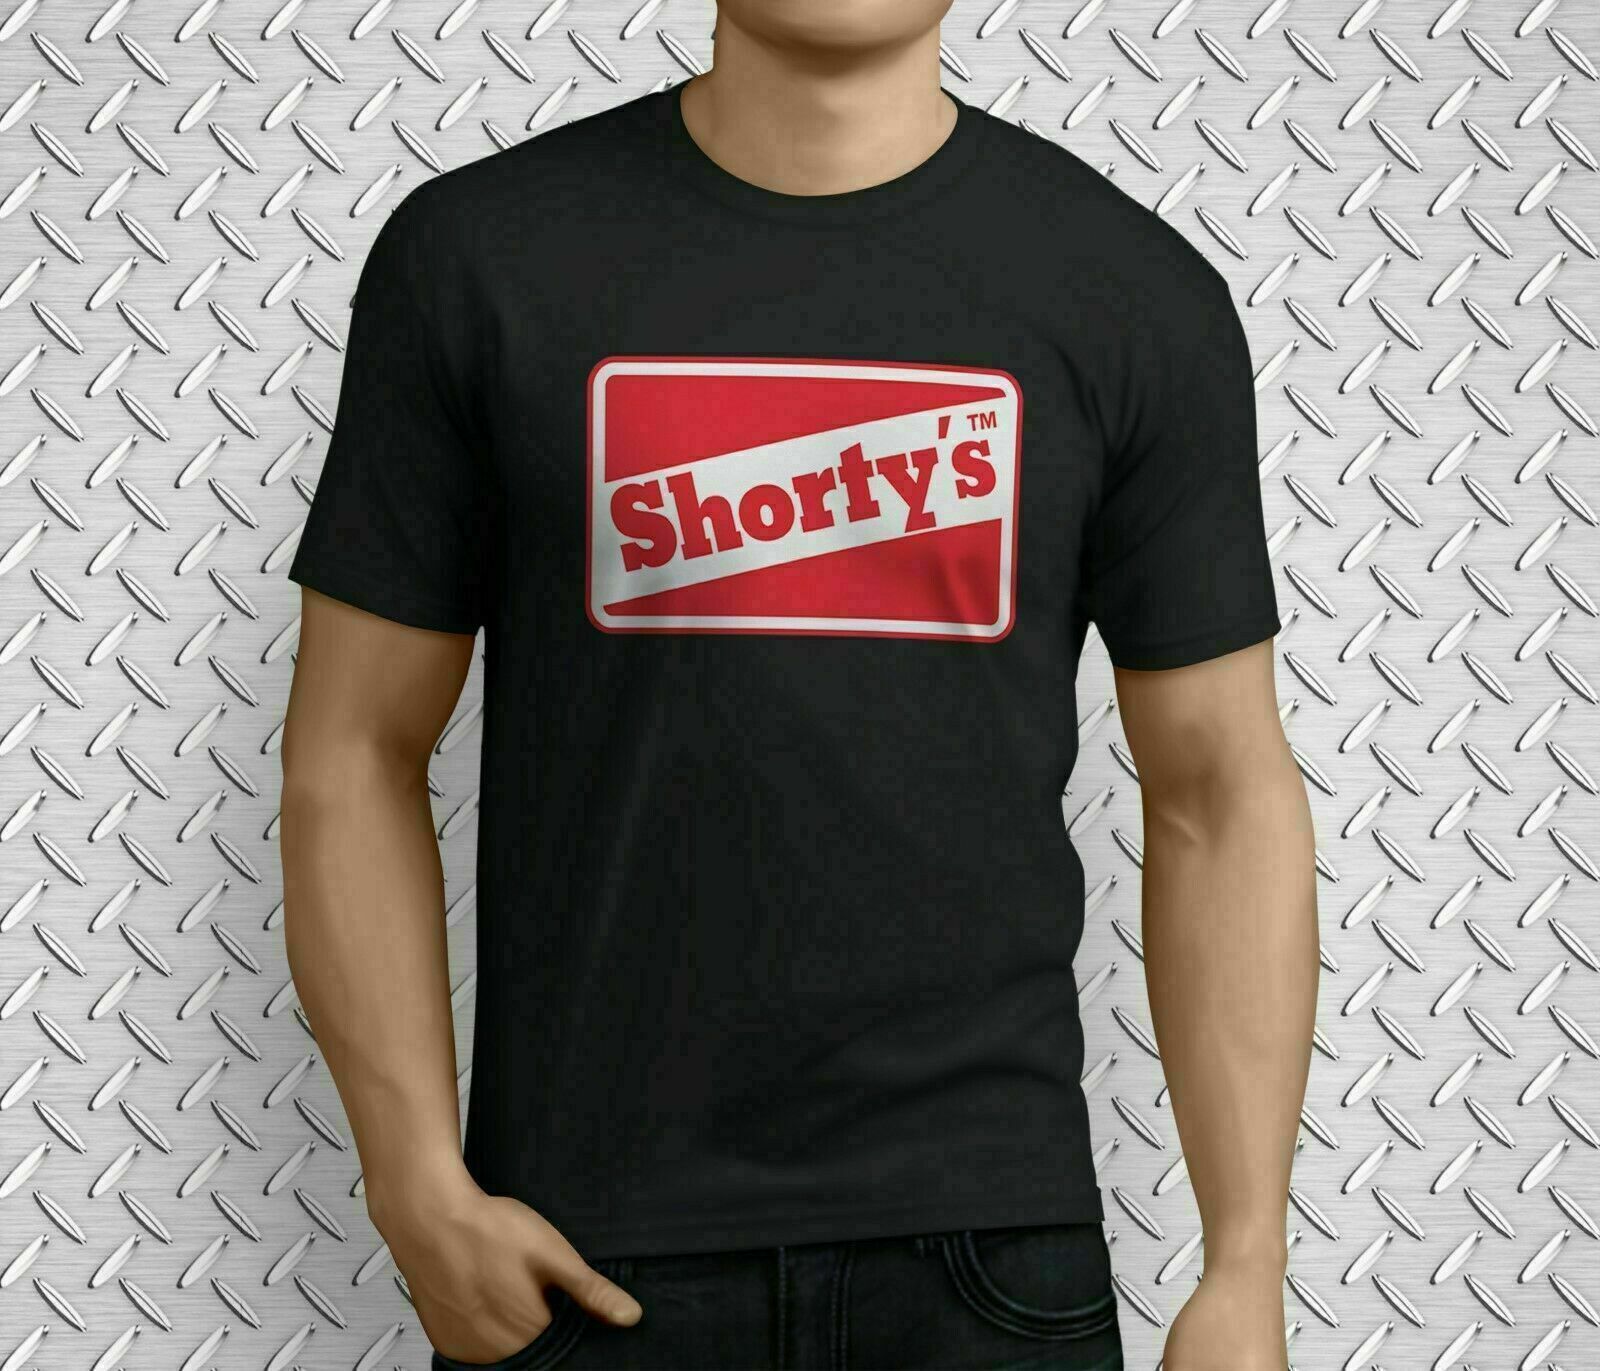 Limited SHORTYS Skateboard Logo Black T-Shirt Size M,L,XL,2XL Size Chat Me